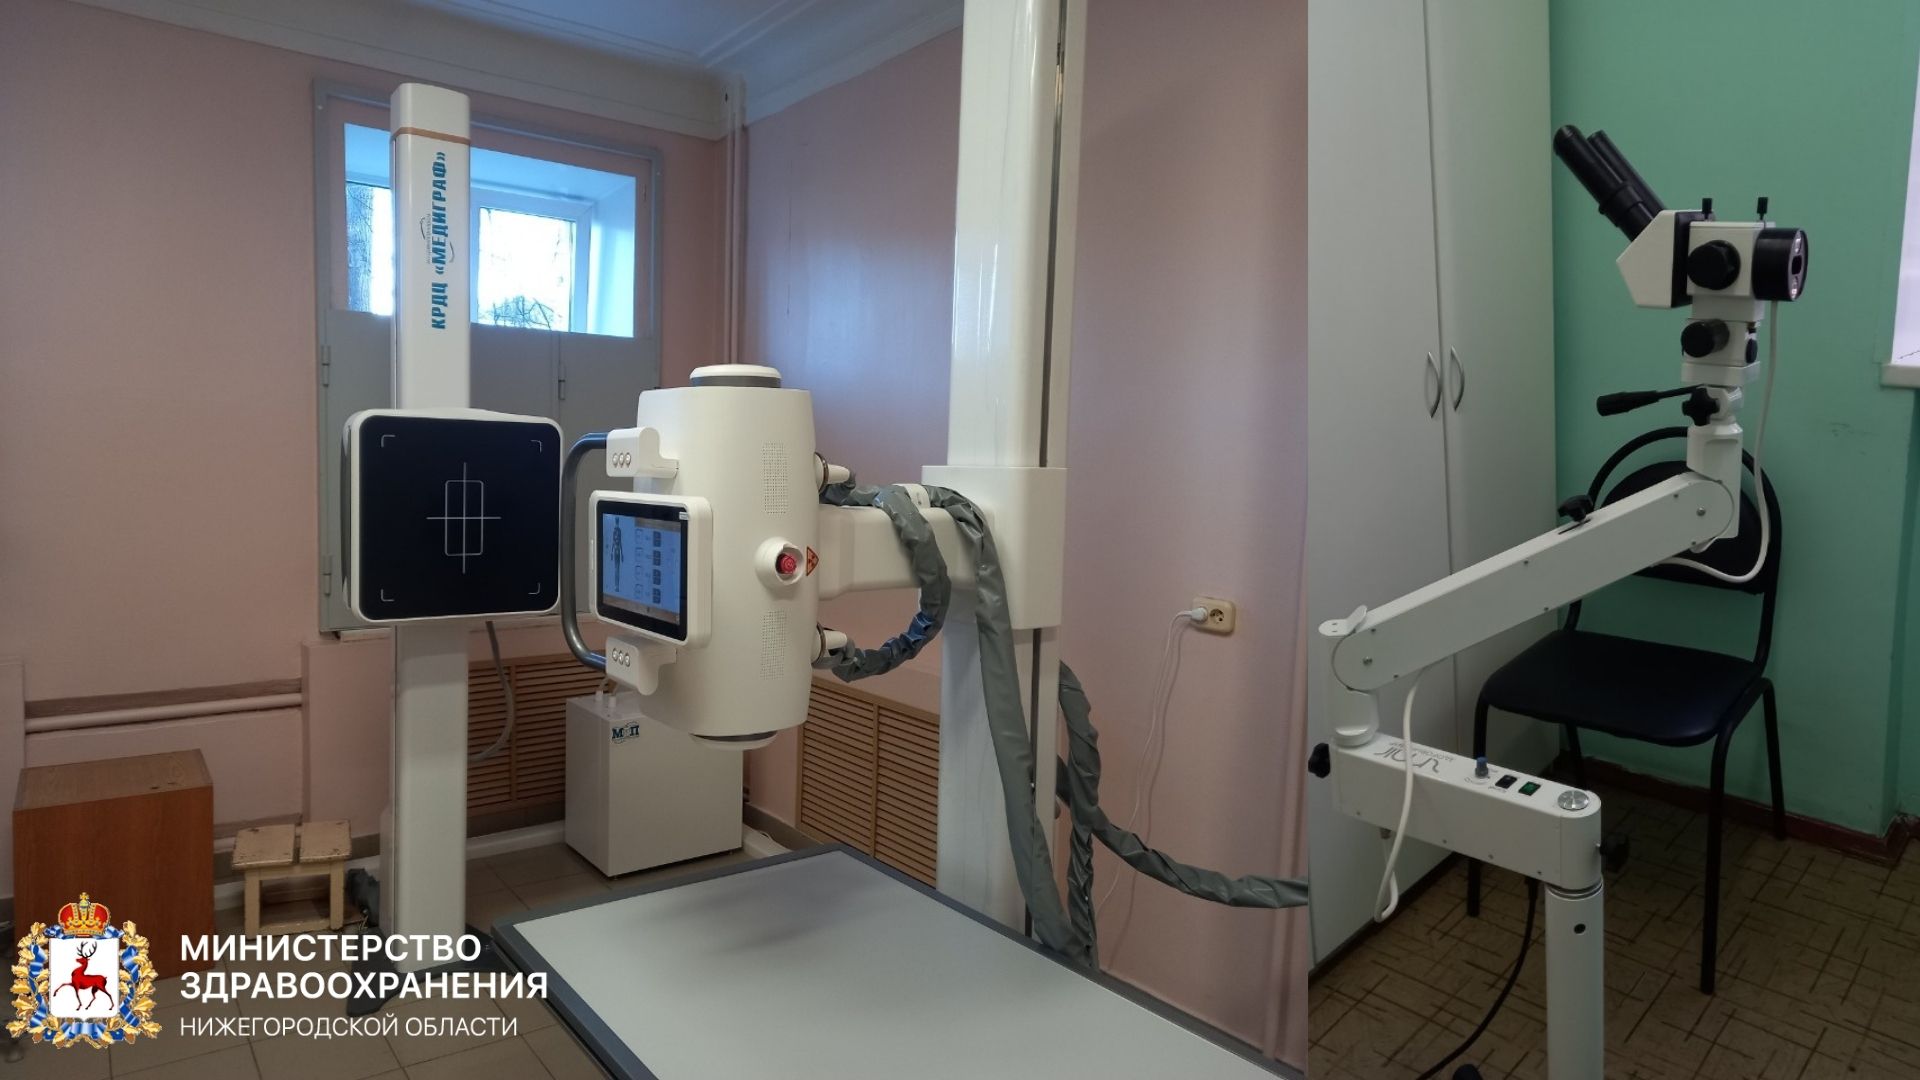 Новое медоборудование поступило в городскую поликлинику №17 Нижнего Новгорода